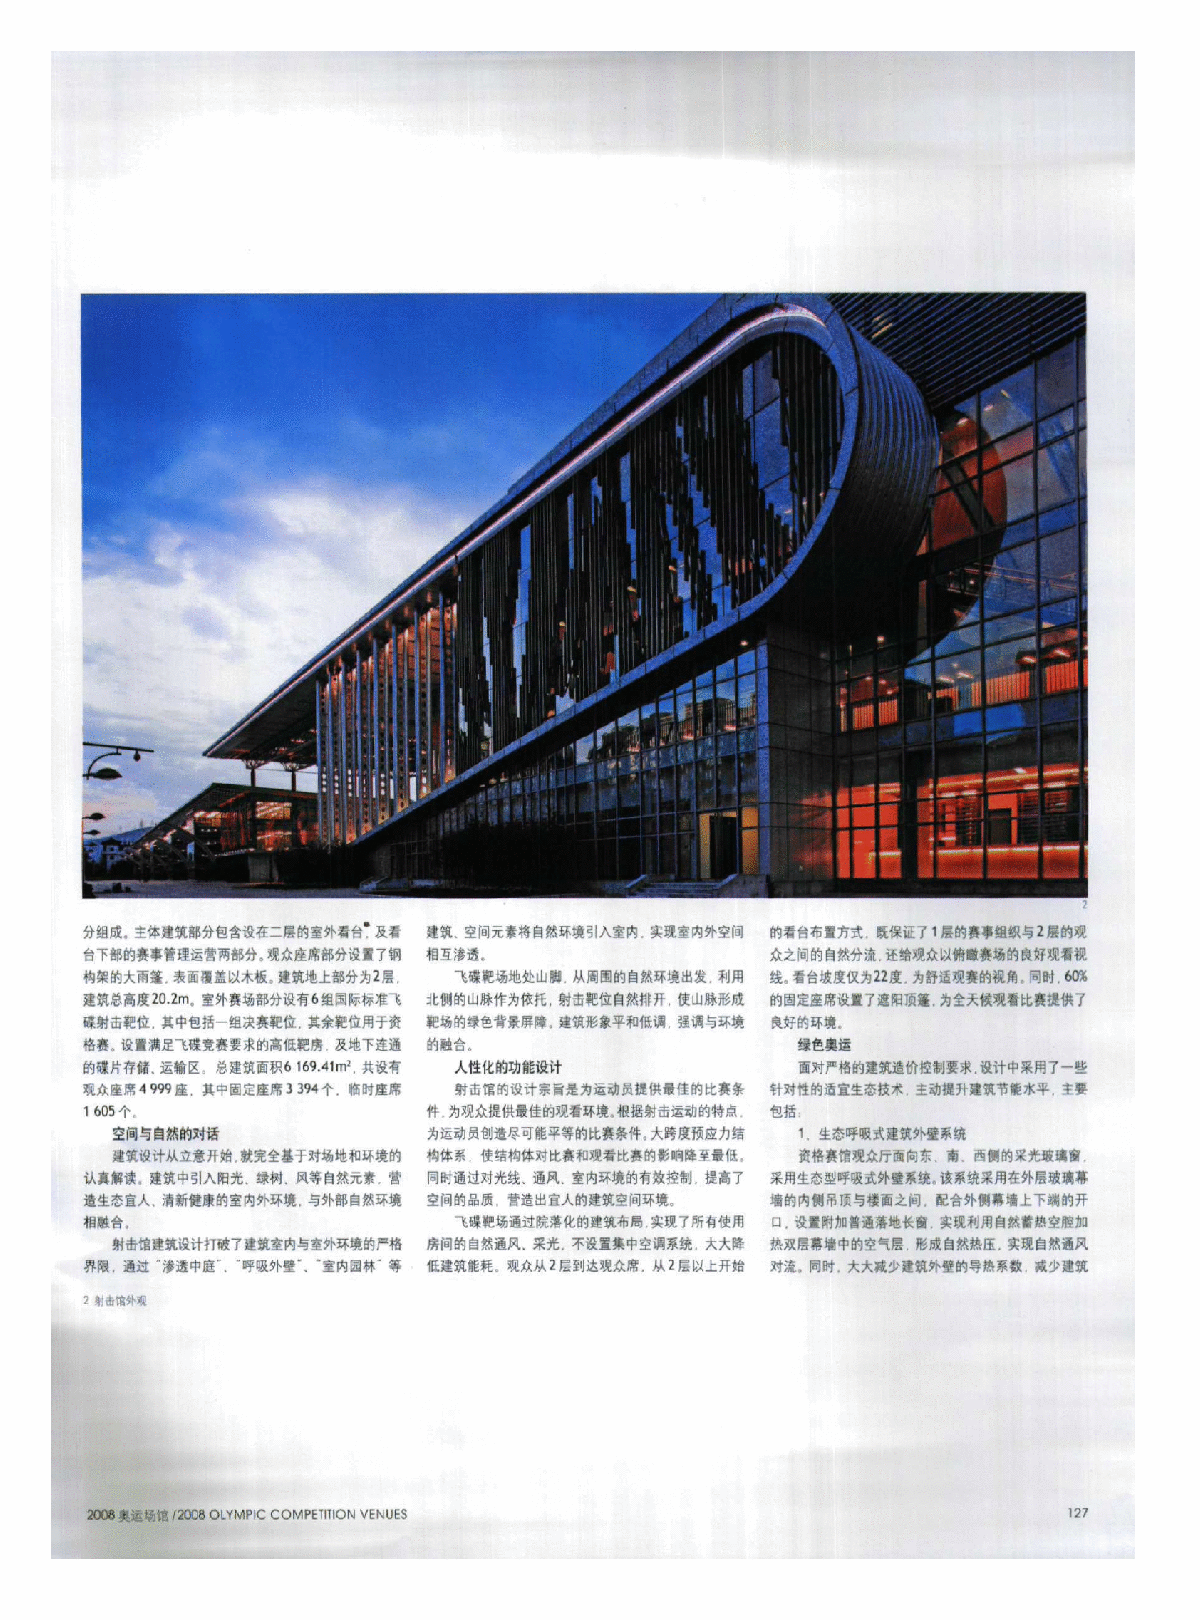 与自然对话,以巧搏力——2008奥运会北京射击馆、飞碟靶场建筑设计-图二